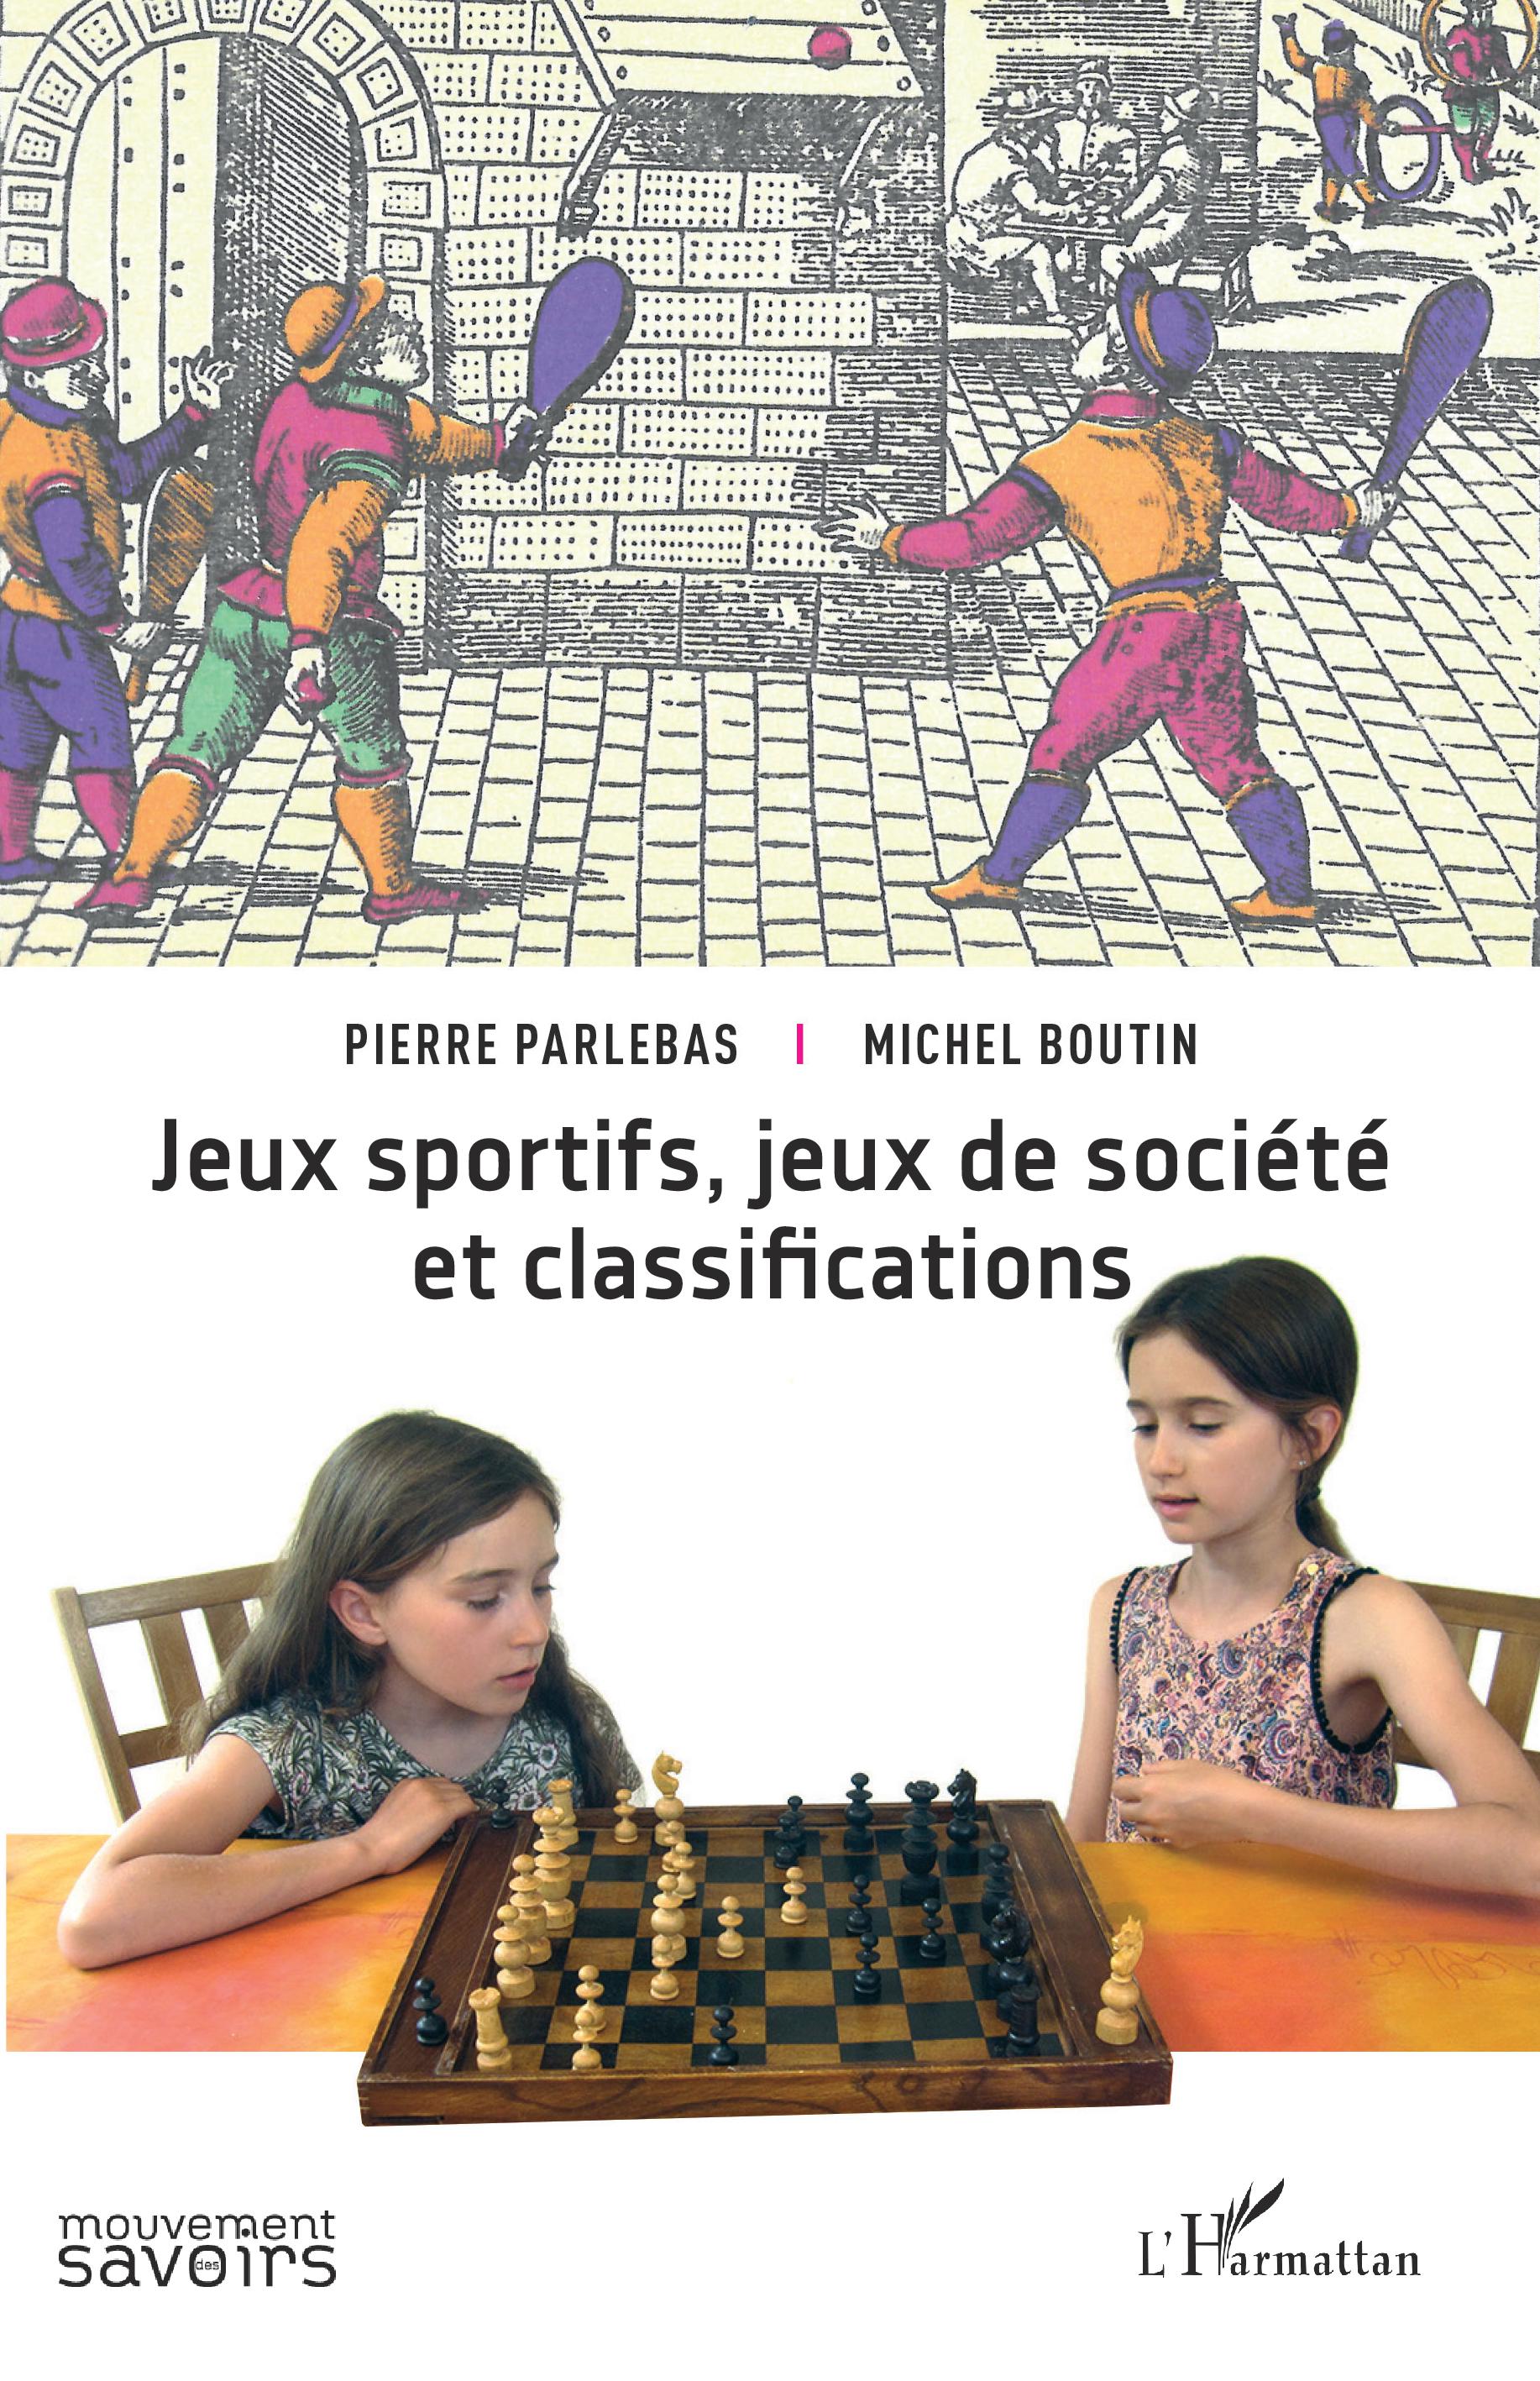 P. Parlebas, M. Boutin, Jeux sportifs, jeux de société et classifications